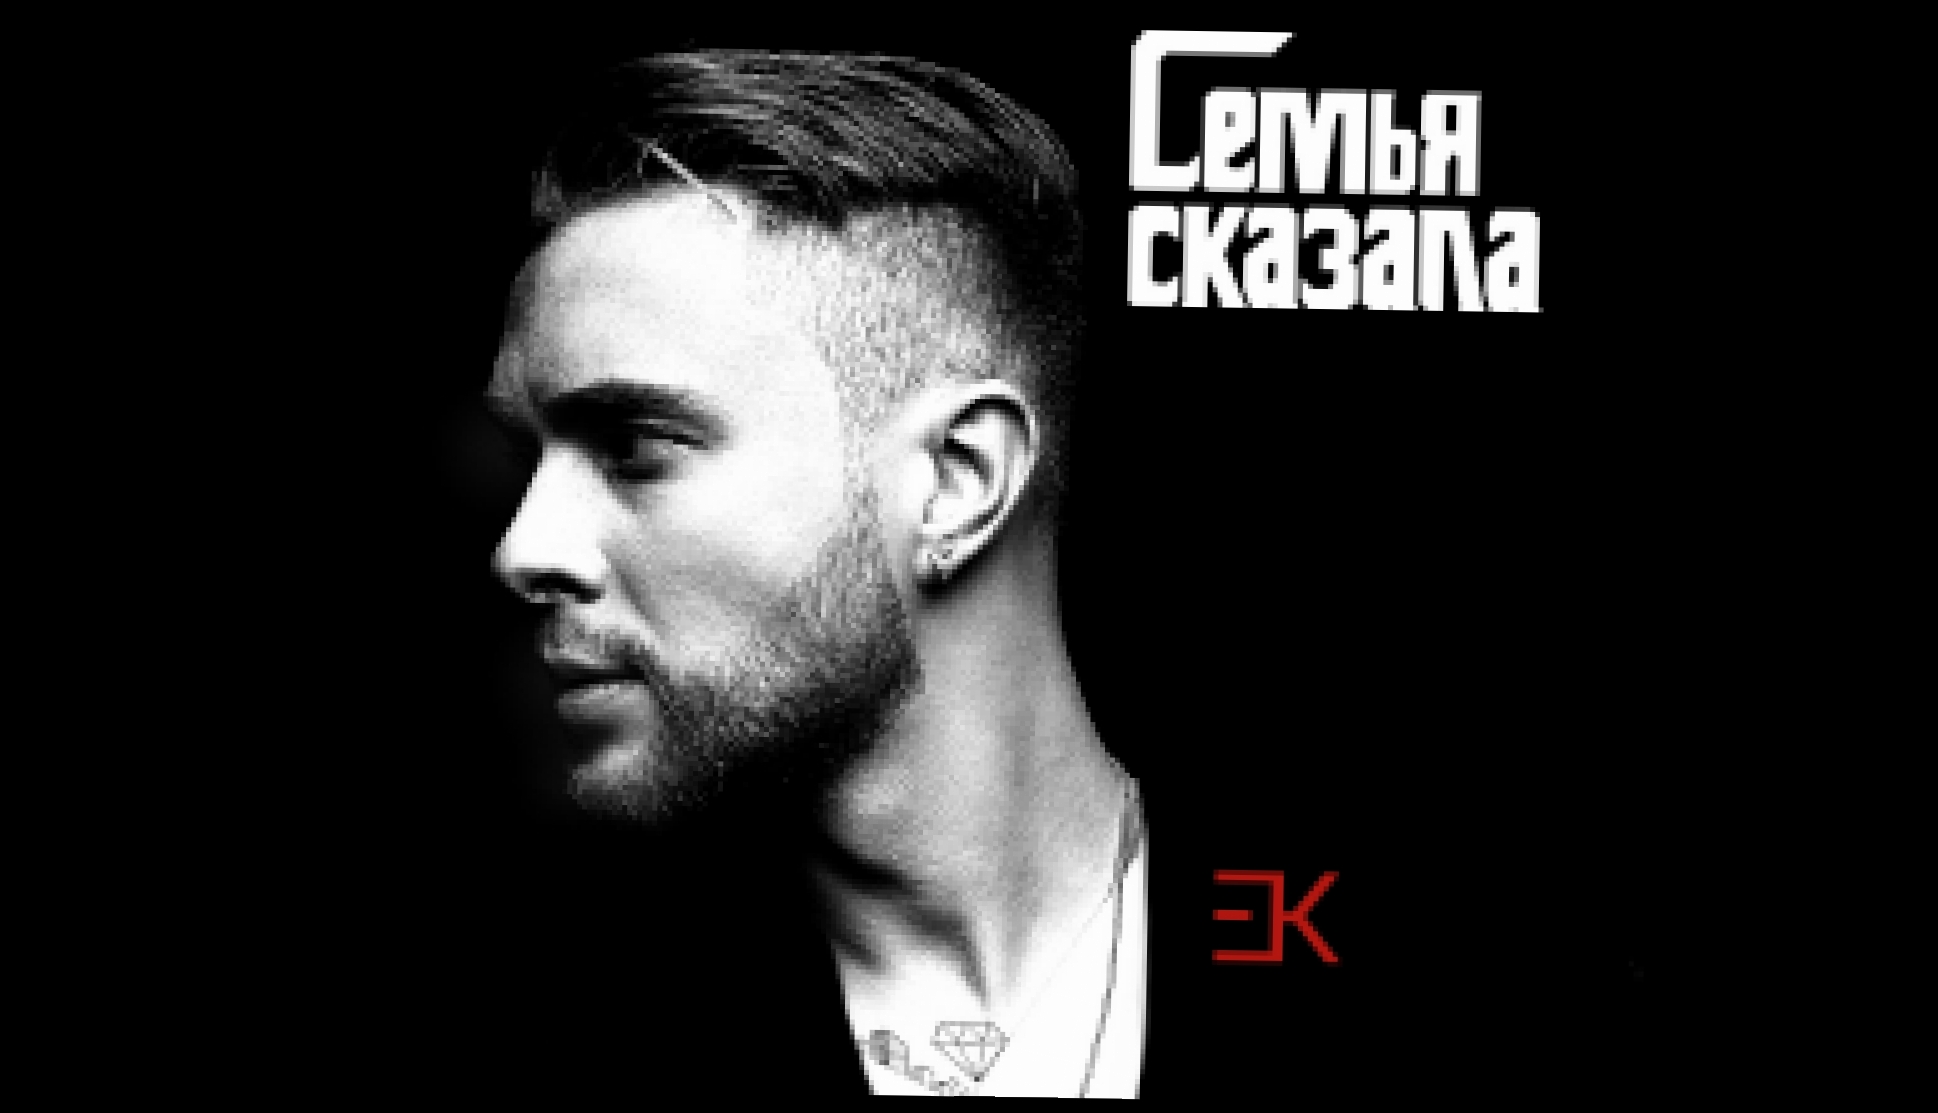 Егор Крид - Семья сказала (премьера трека, 2018) - видеоклип на песню